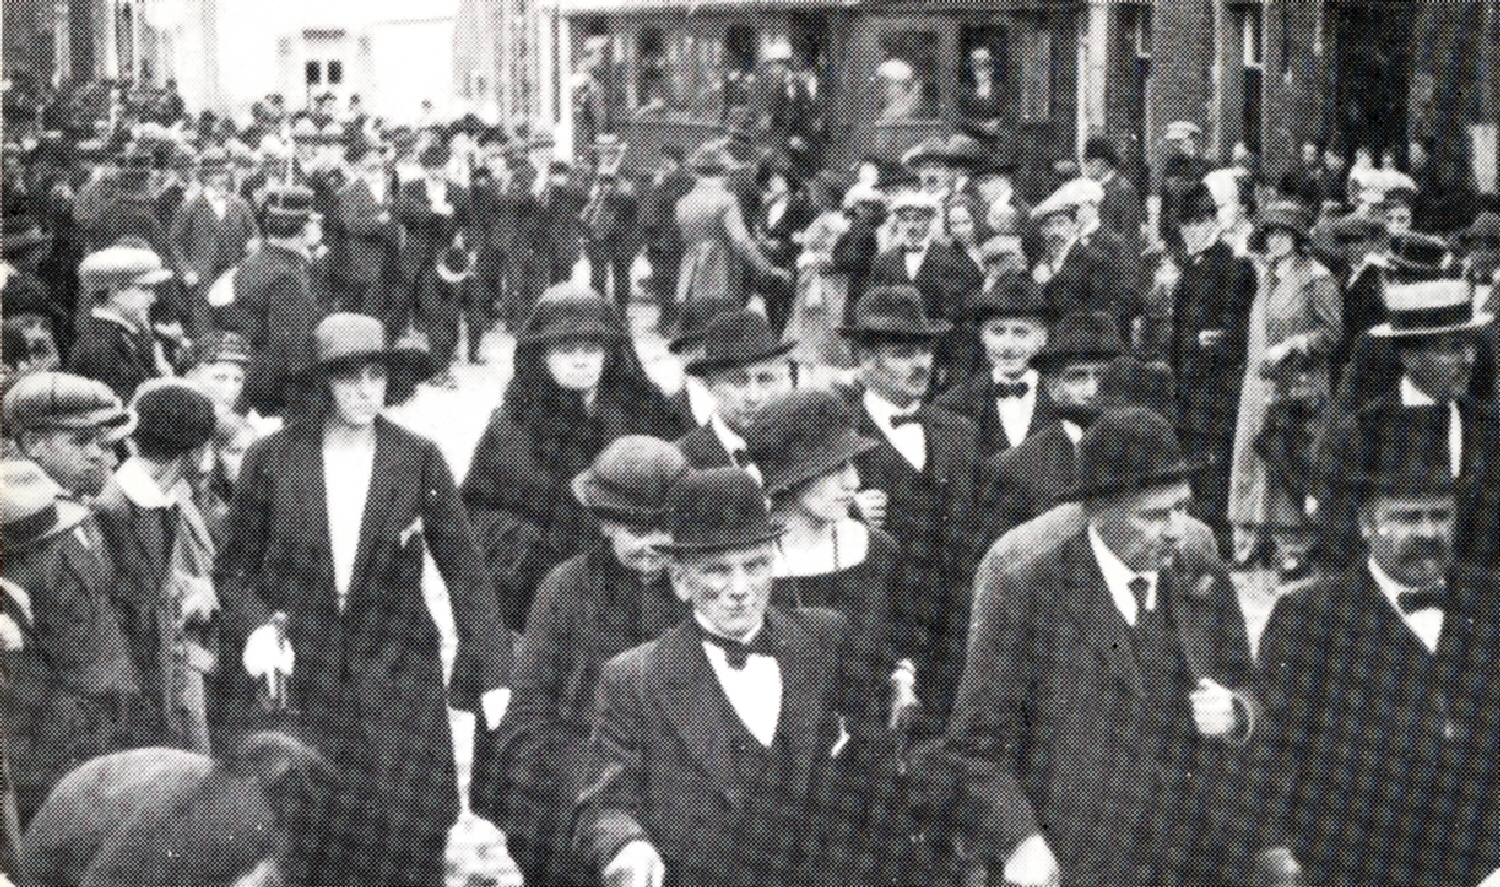 Hornu : Rue Grande, fête scolaire. Le senateur Quinchon accompagné de Brenez (au premier rang à droite) et Madame Mulplas à gauche. (1924).